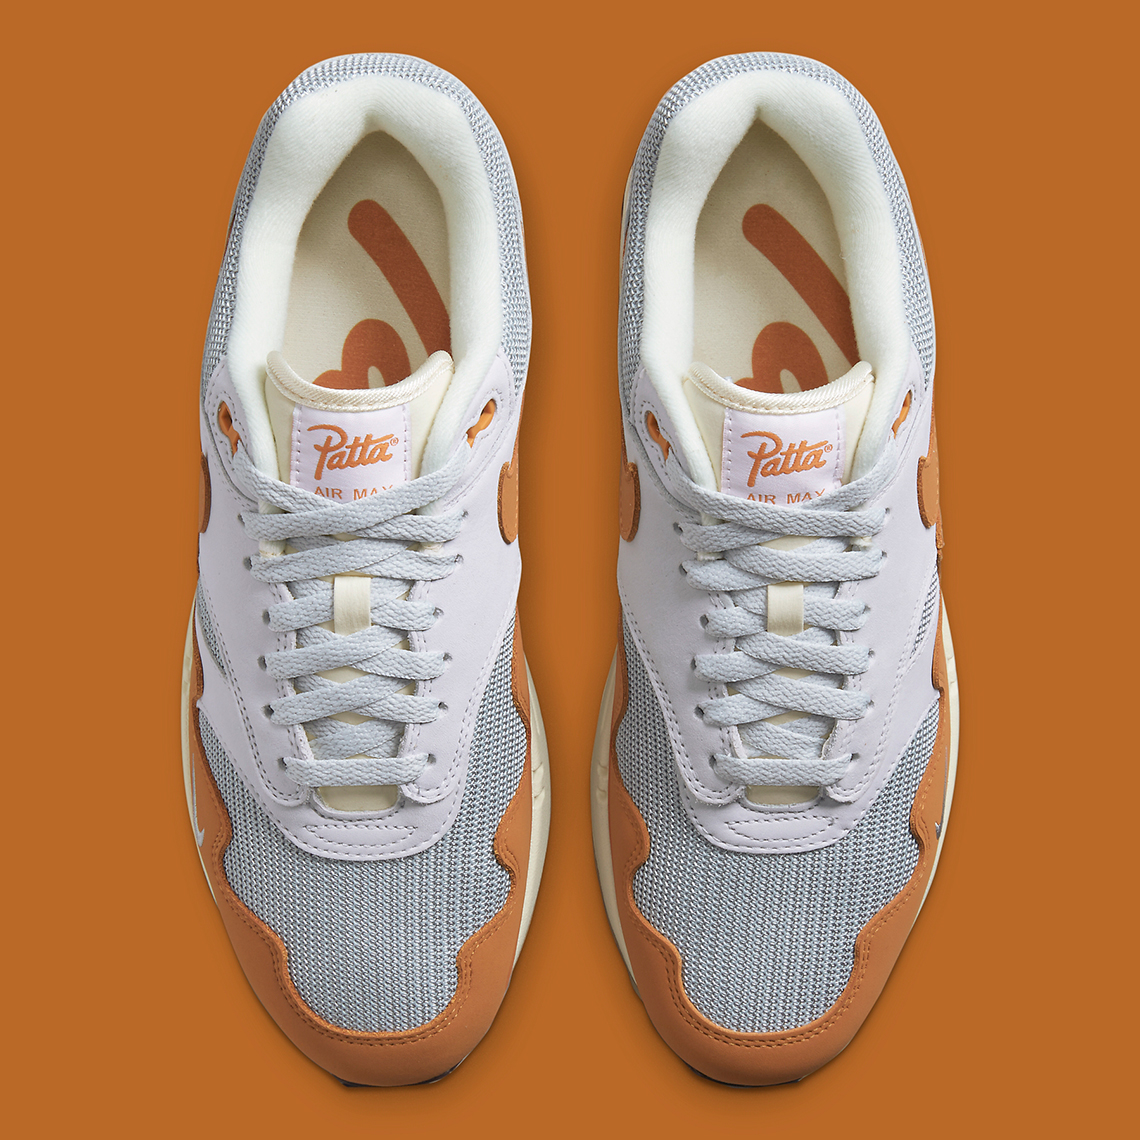 Patta el producto Nike Air Max III Zapatillas Blanco Dh1348 001 6